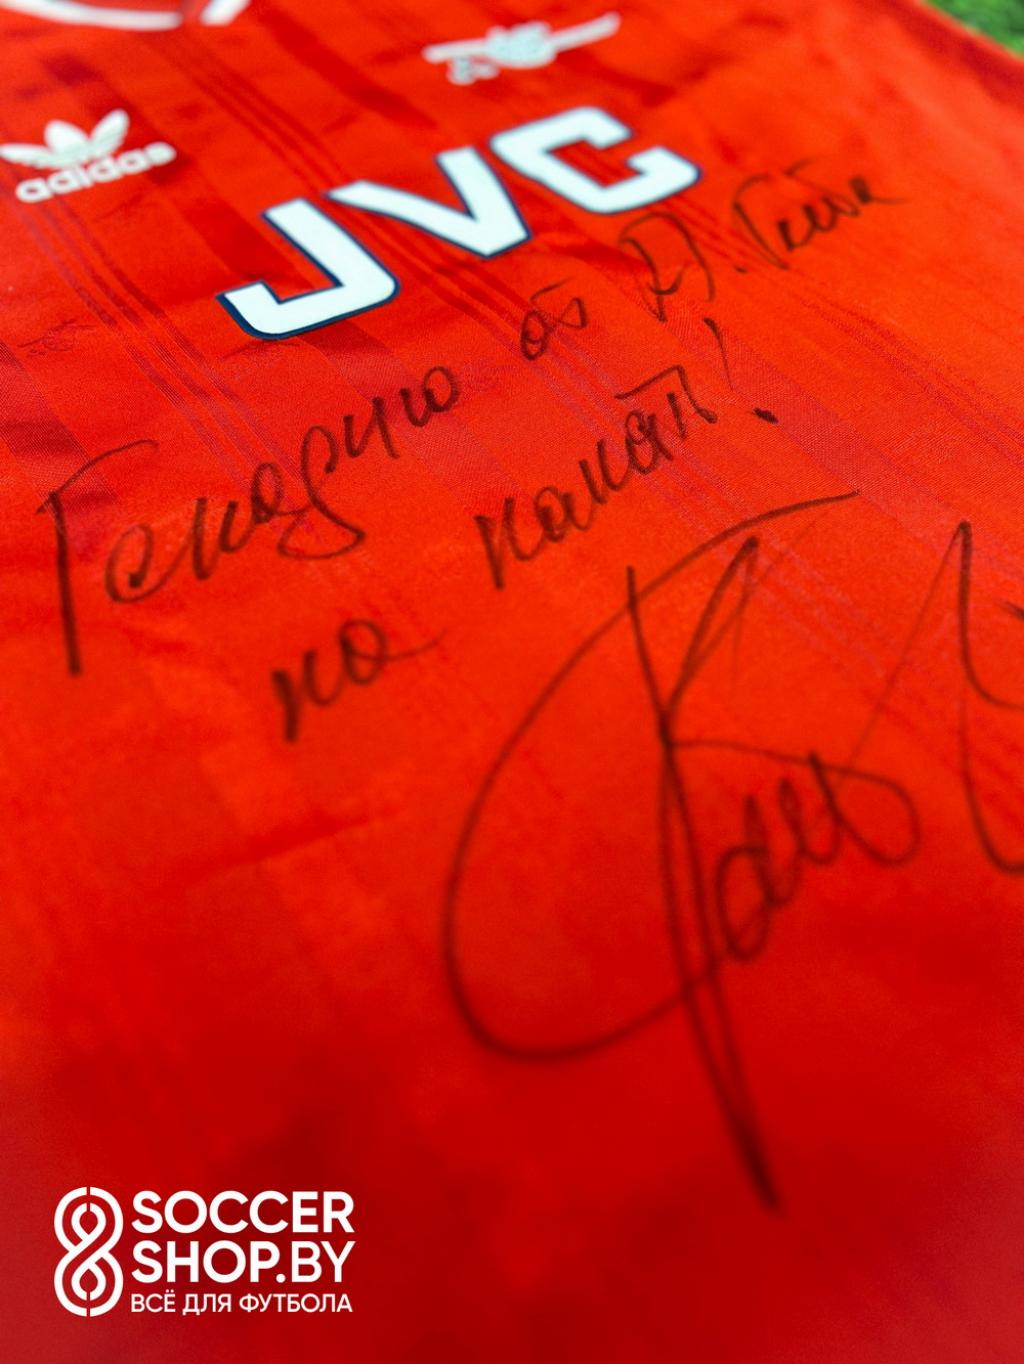 Ретро-футболка «Арсенала» с автографом Александра Глеба